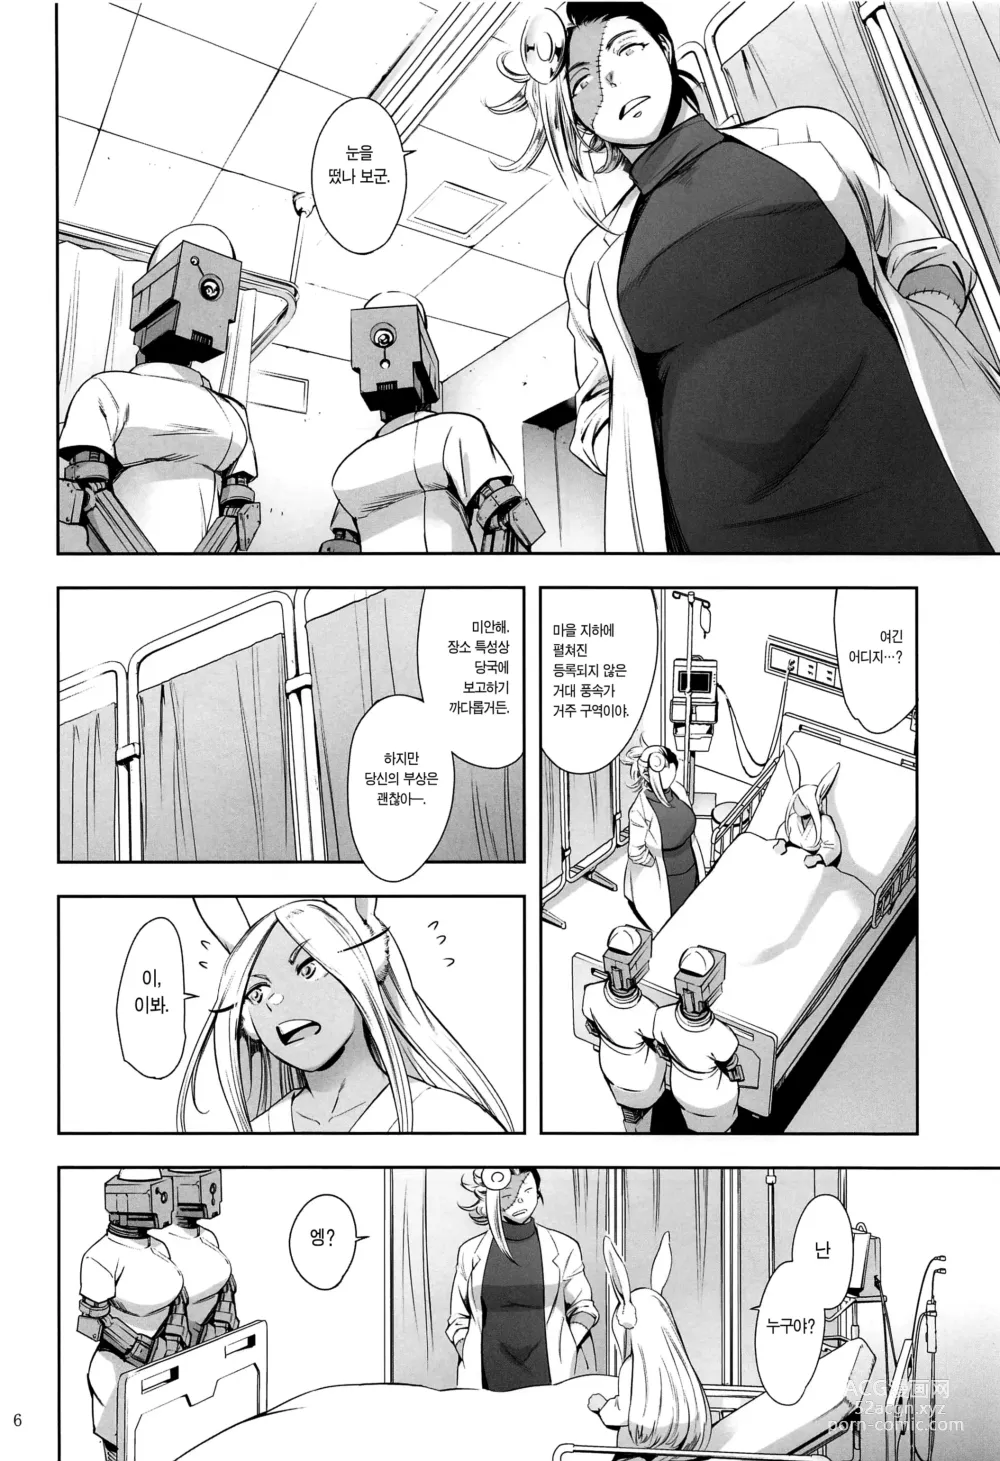 Page 5 of doujinshi 지명은 토끼입니까?